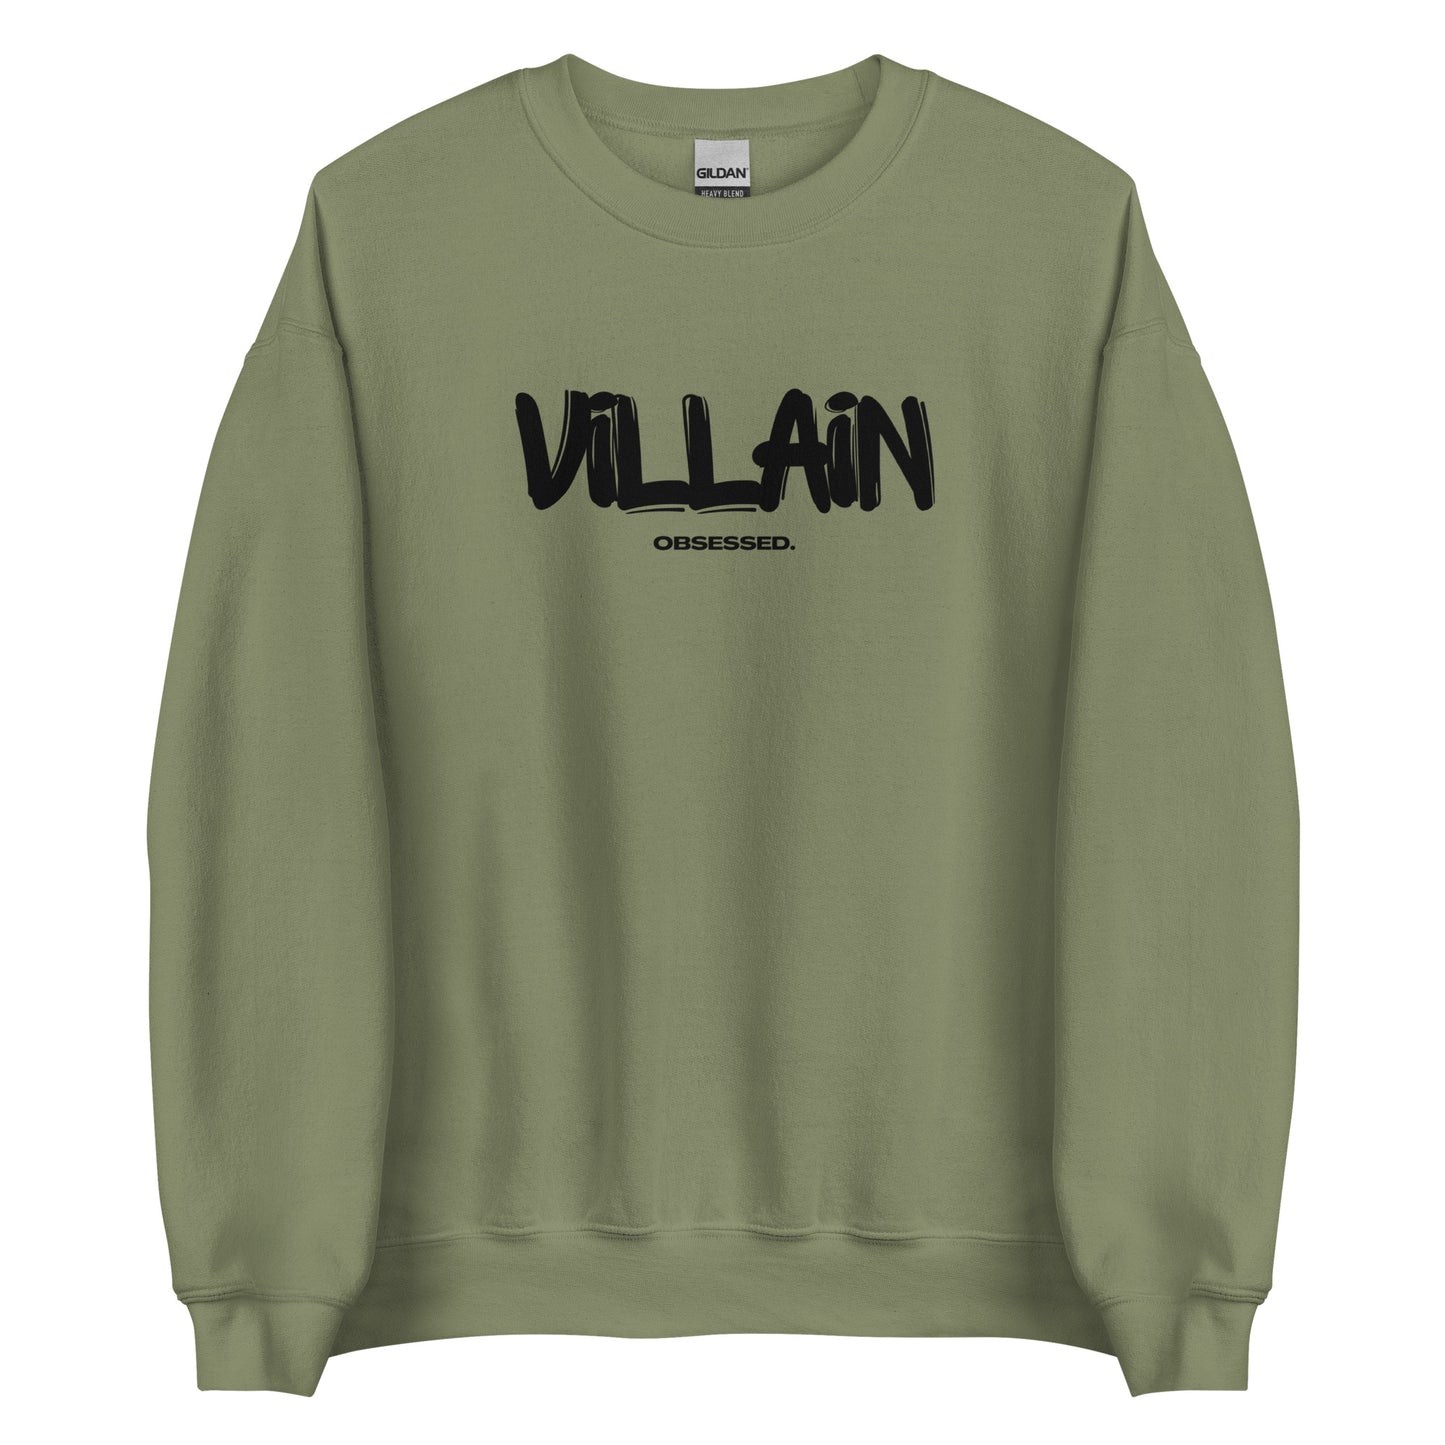 villain obsessed sweatshirt